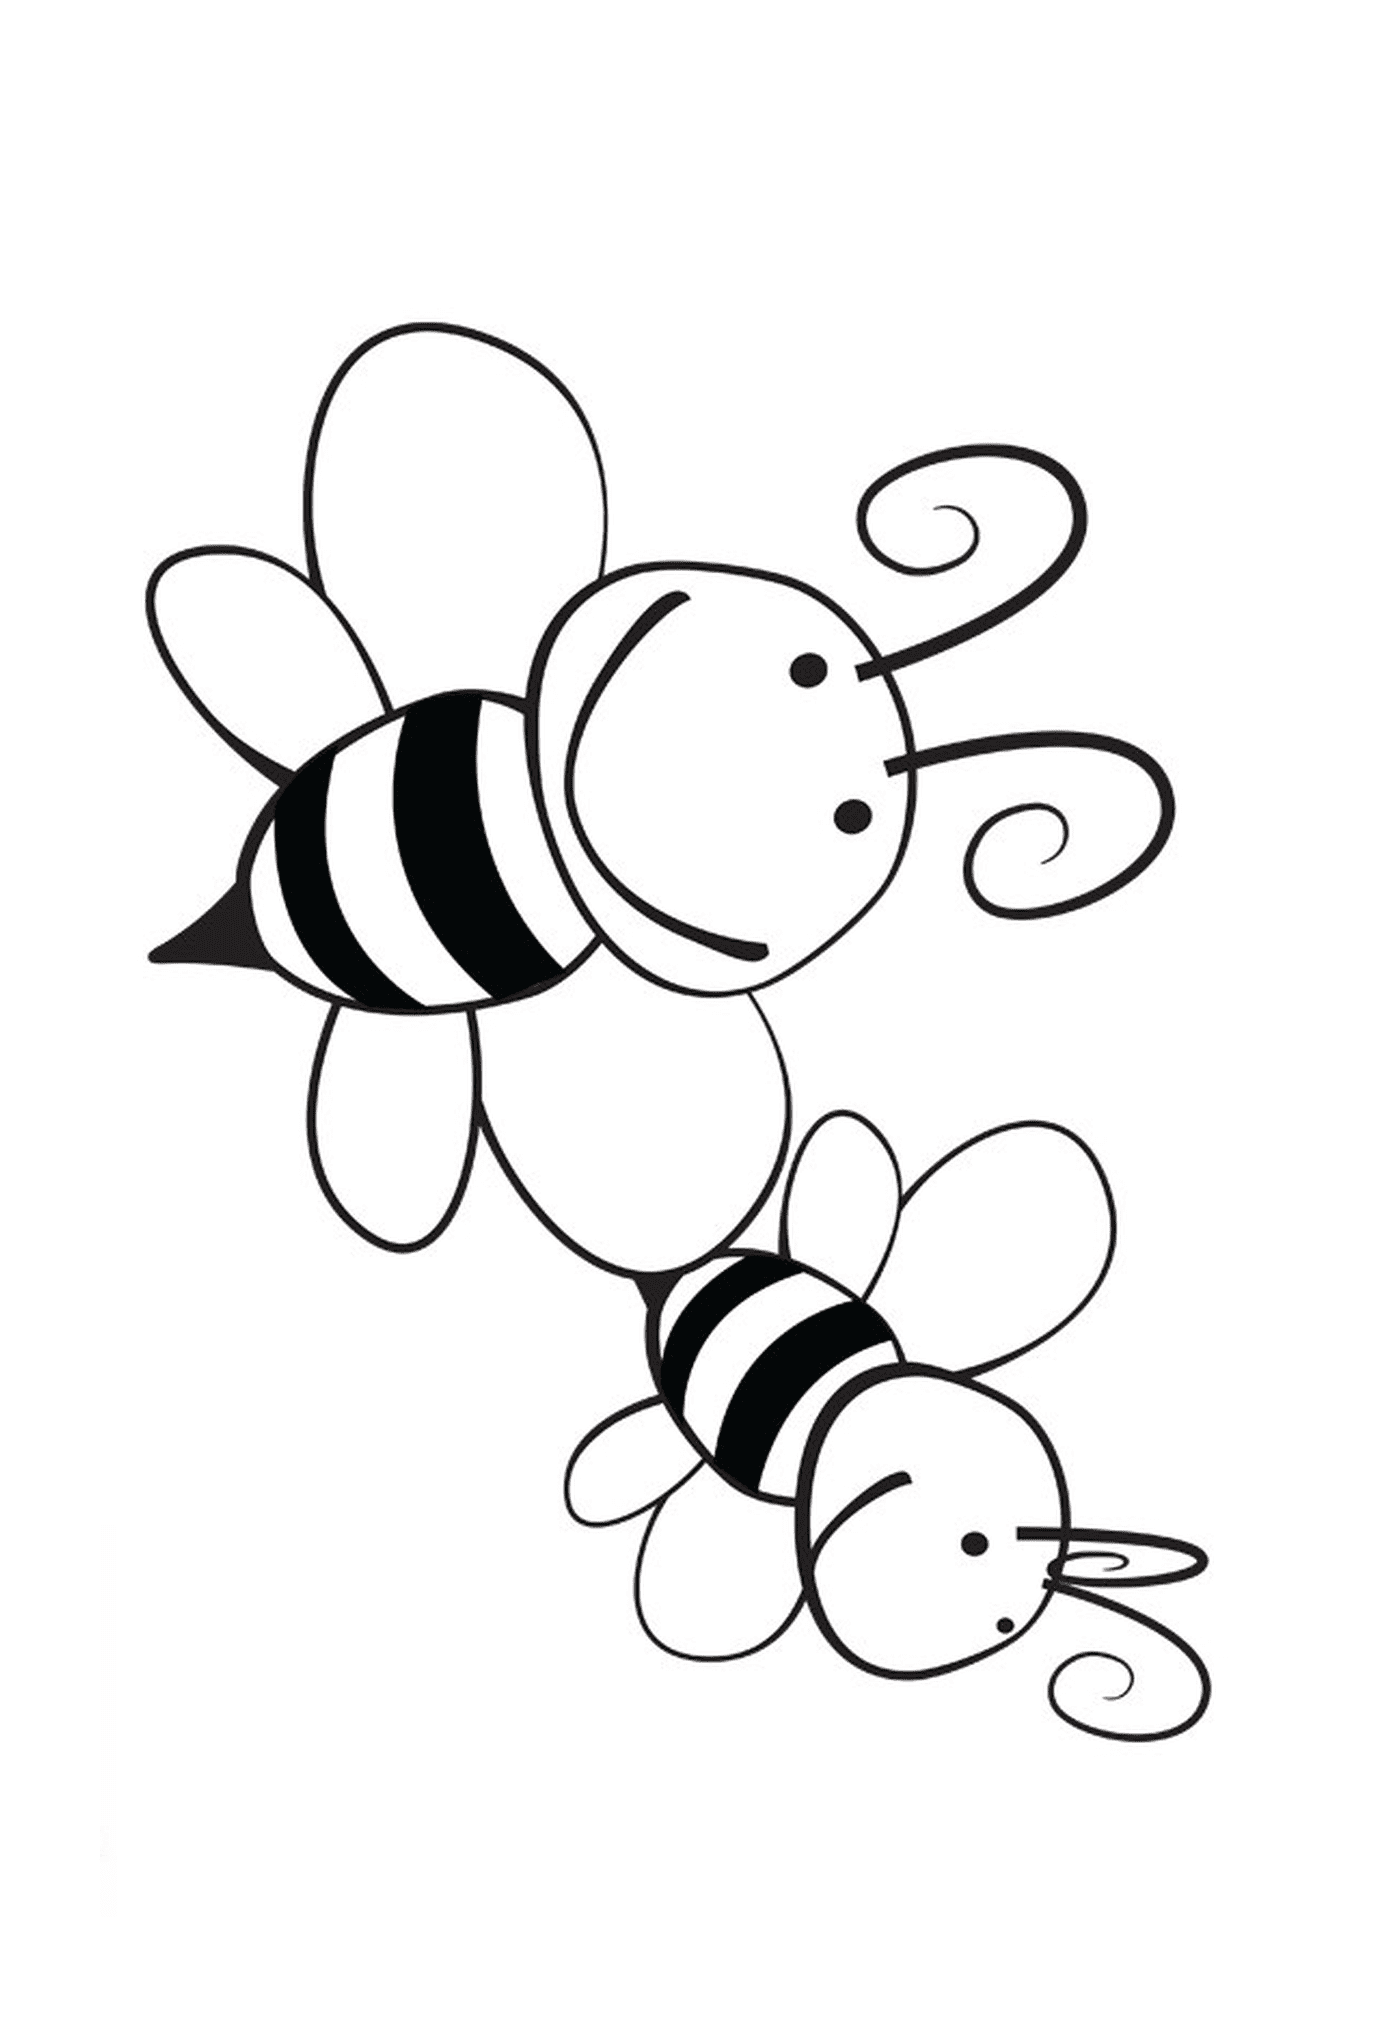  दो मुस्कुराते मधुमक्खियों के साथ 